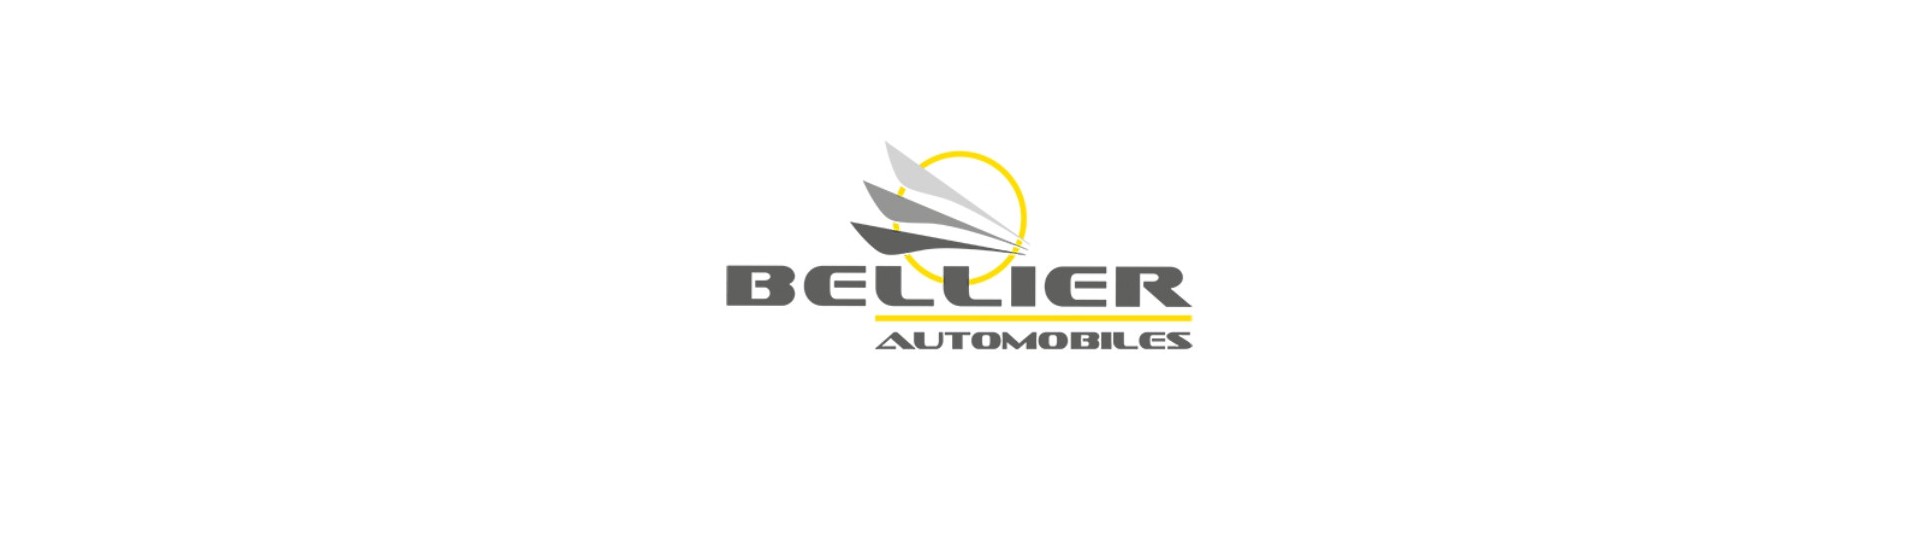 Manómetro al mejor precio para coche sin permiso Bellier